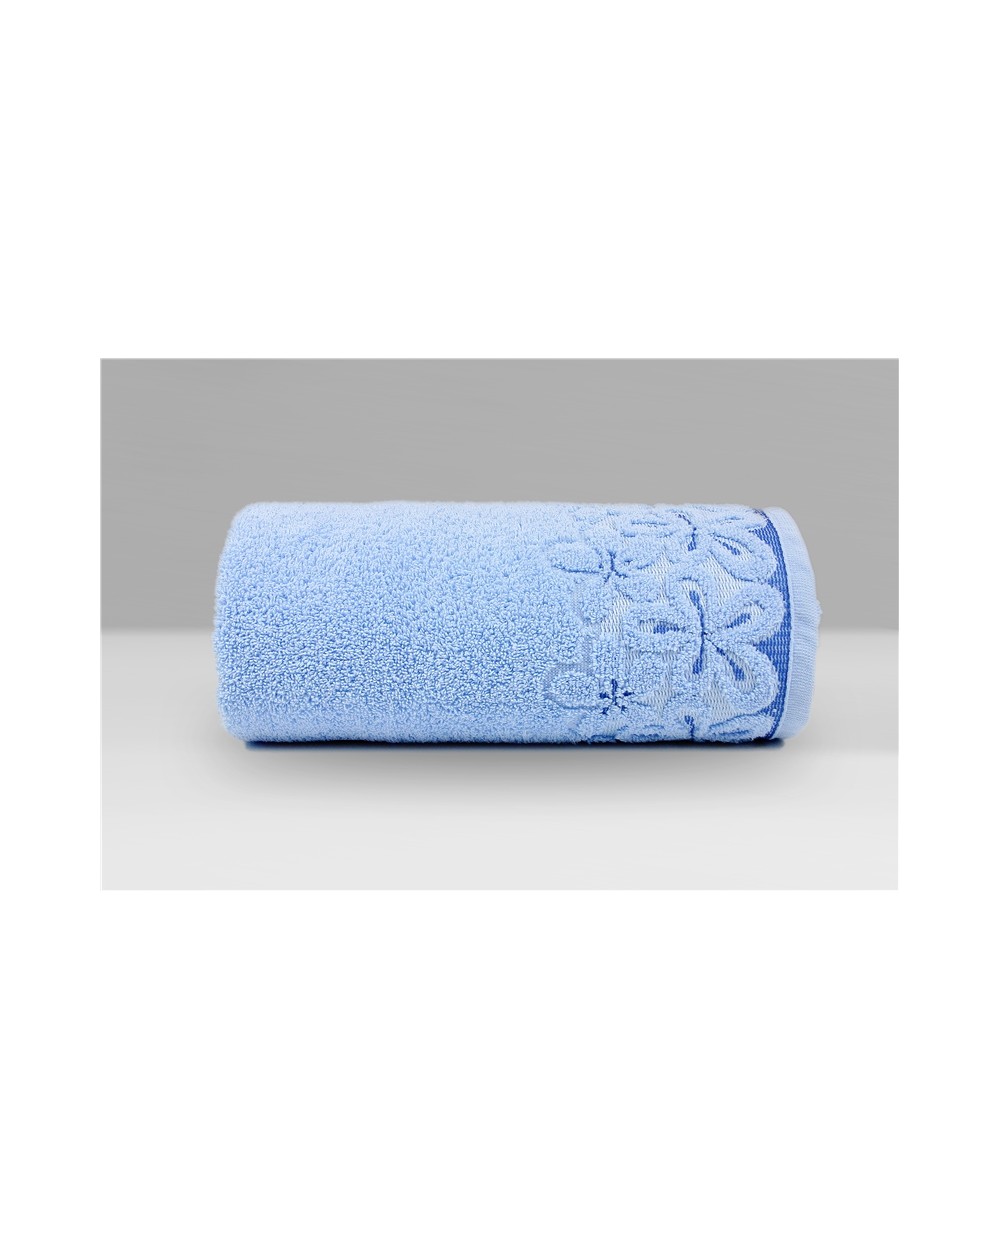 Ręcznik Bella mikrobawełna 50x90 błękitny